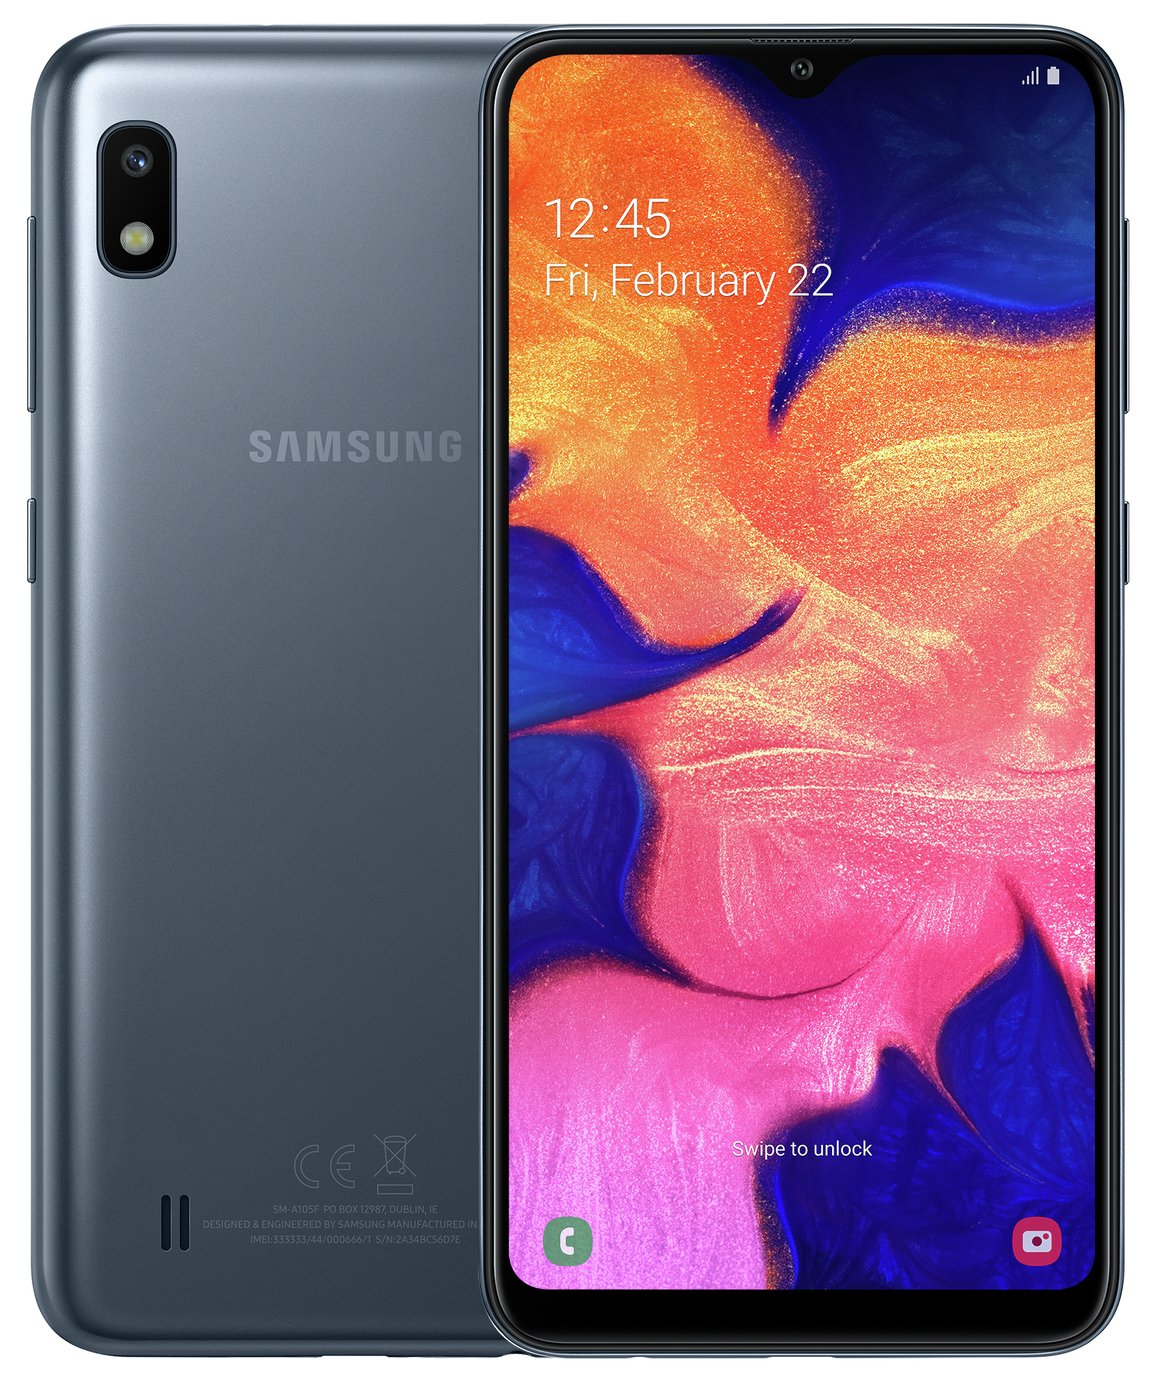 Samsung SIM Free A10 32GB Mobile Phone - Black